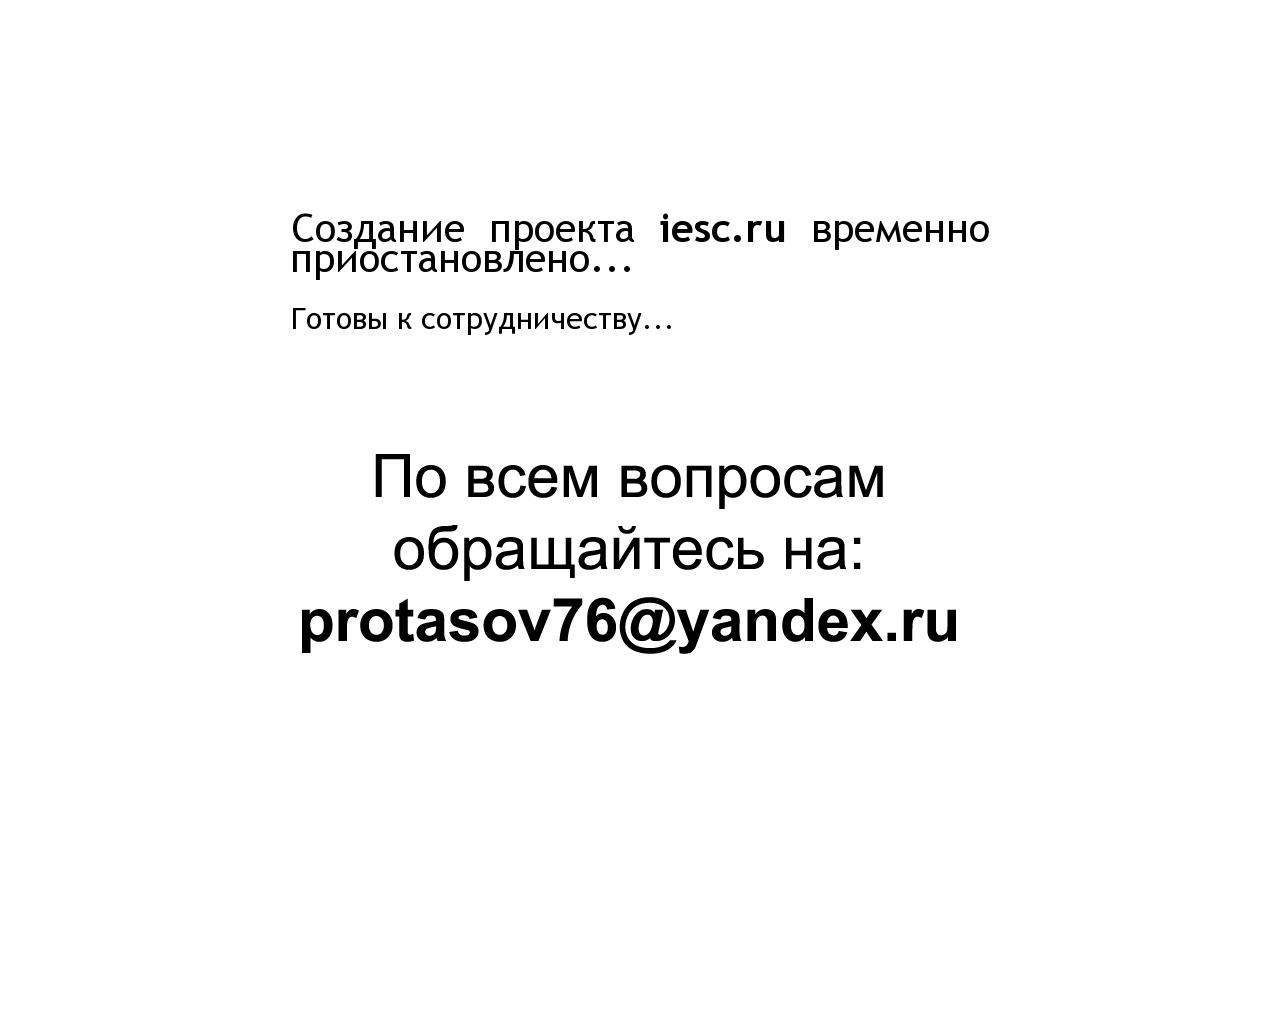 Изображение сайта iesc.ru в разрешении 1280x1024